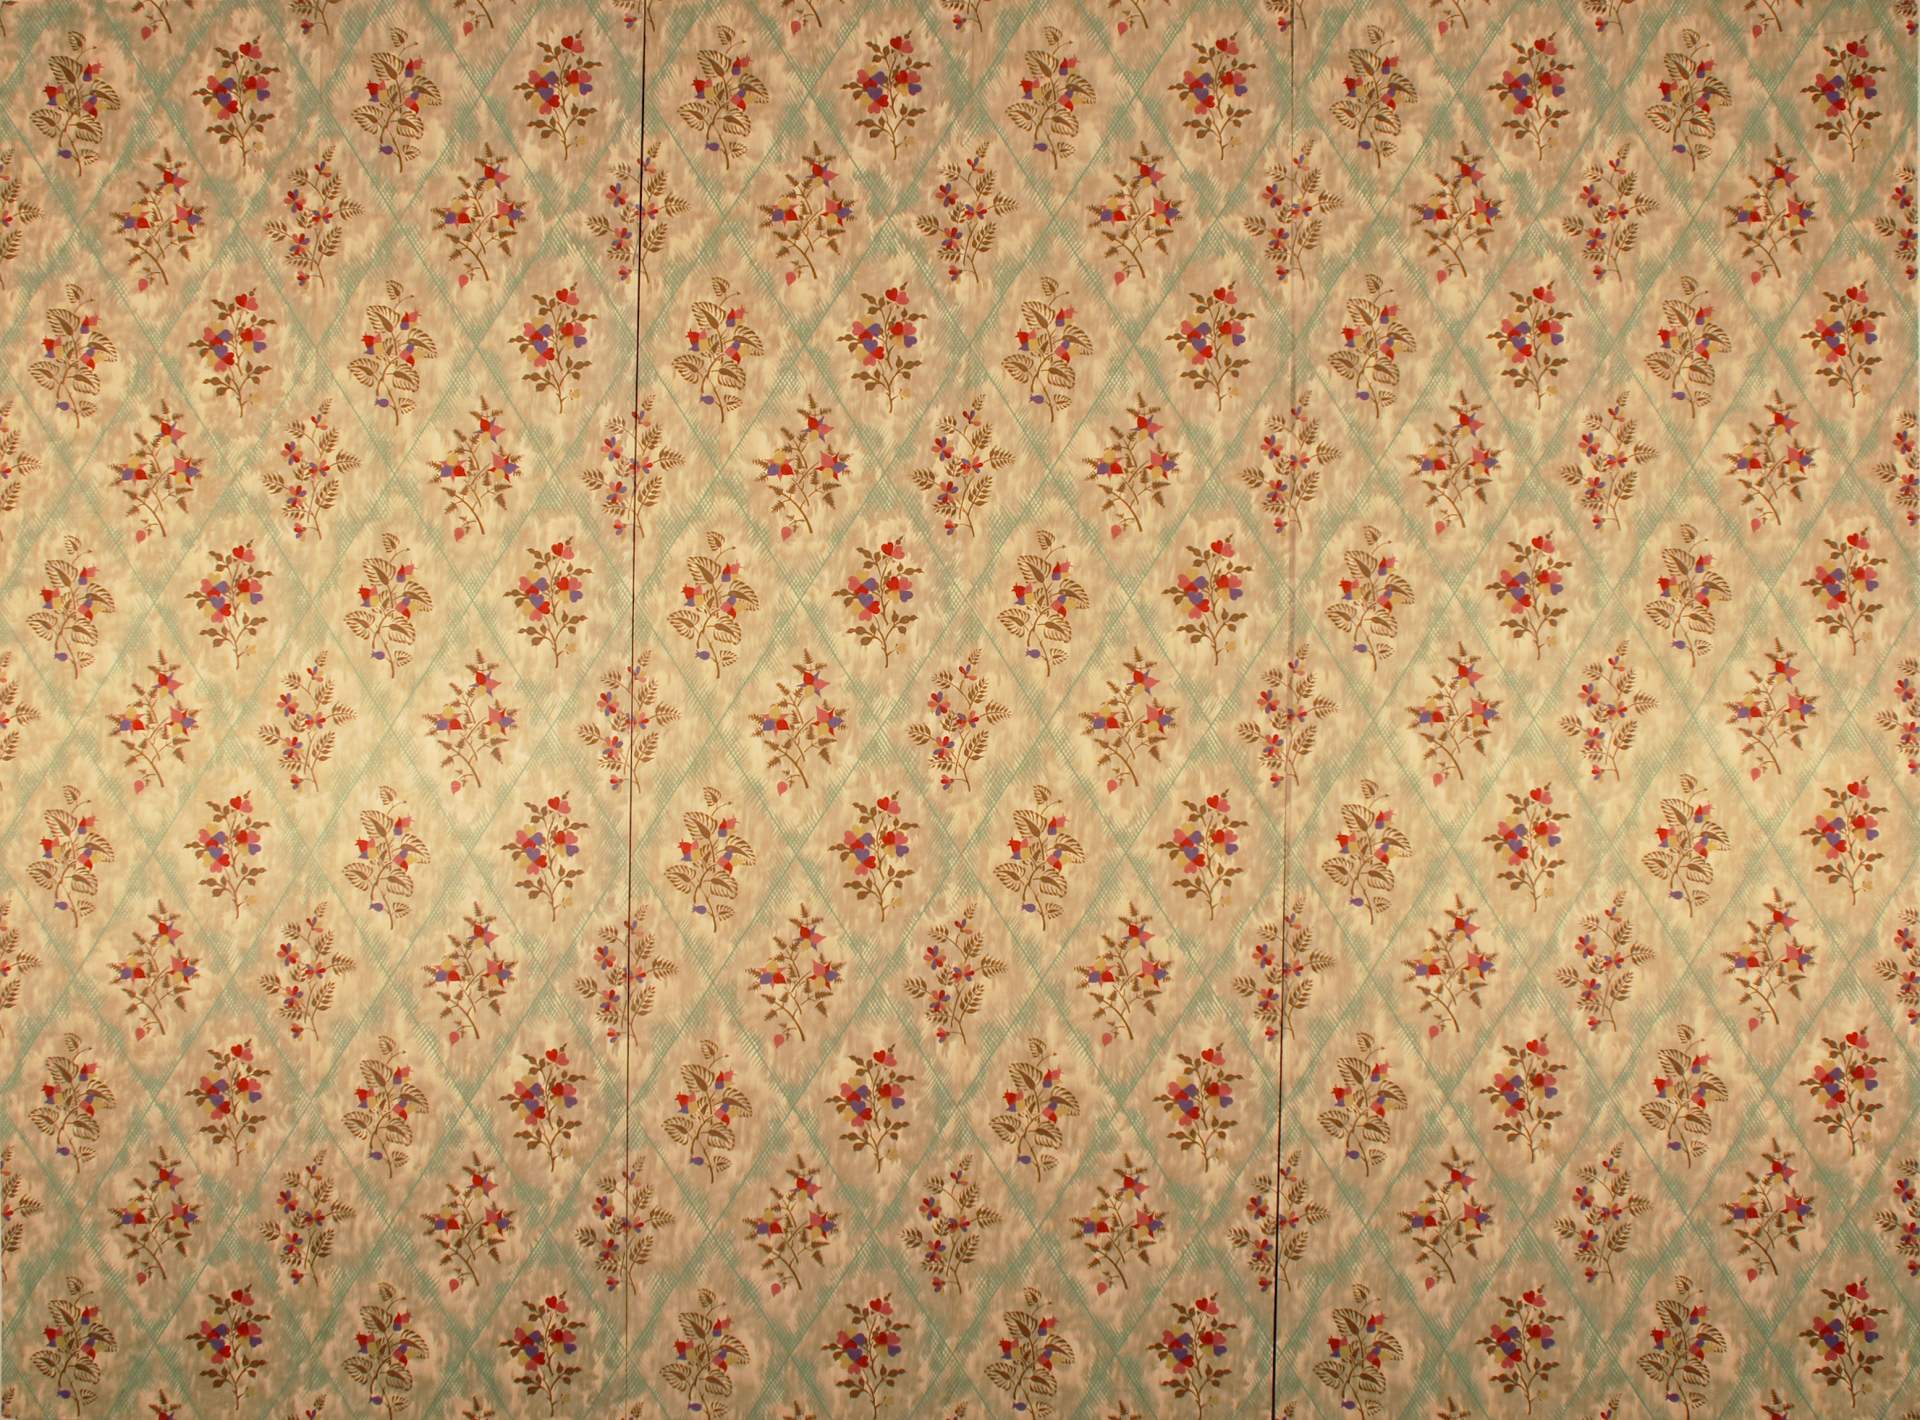 Stylized Flowers in Diagonal Pattern